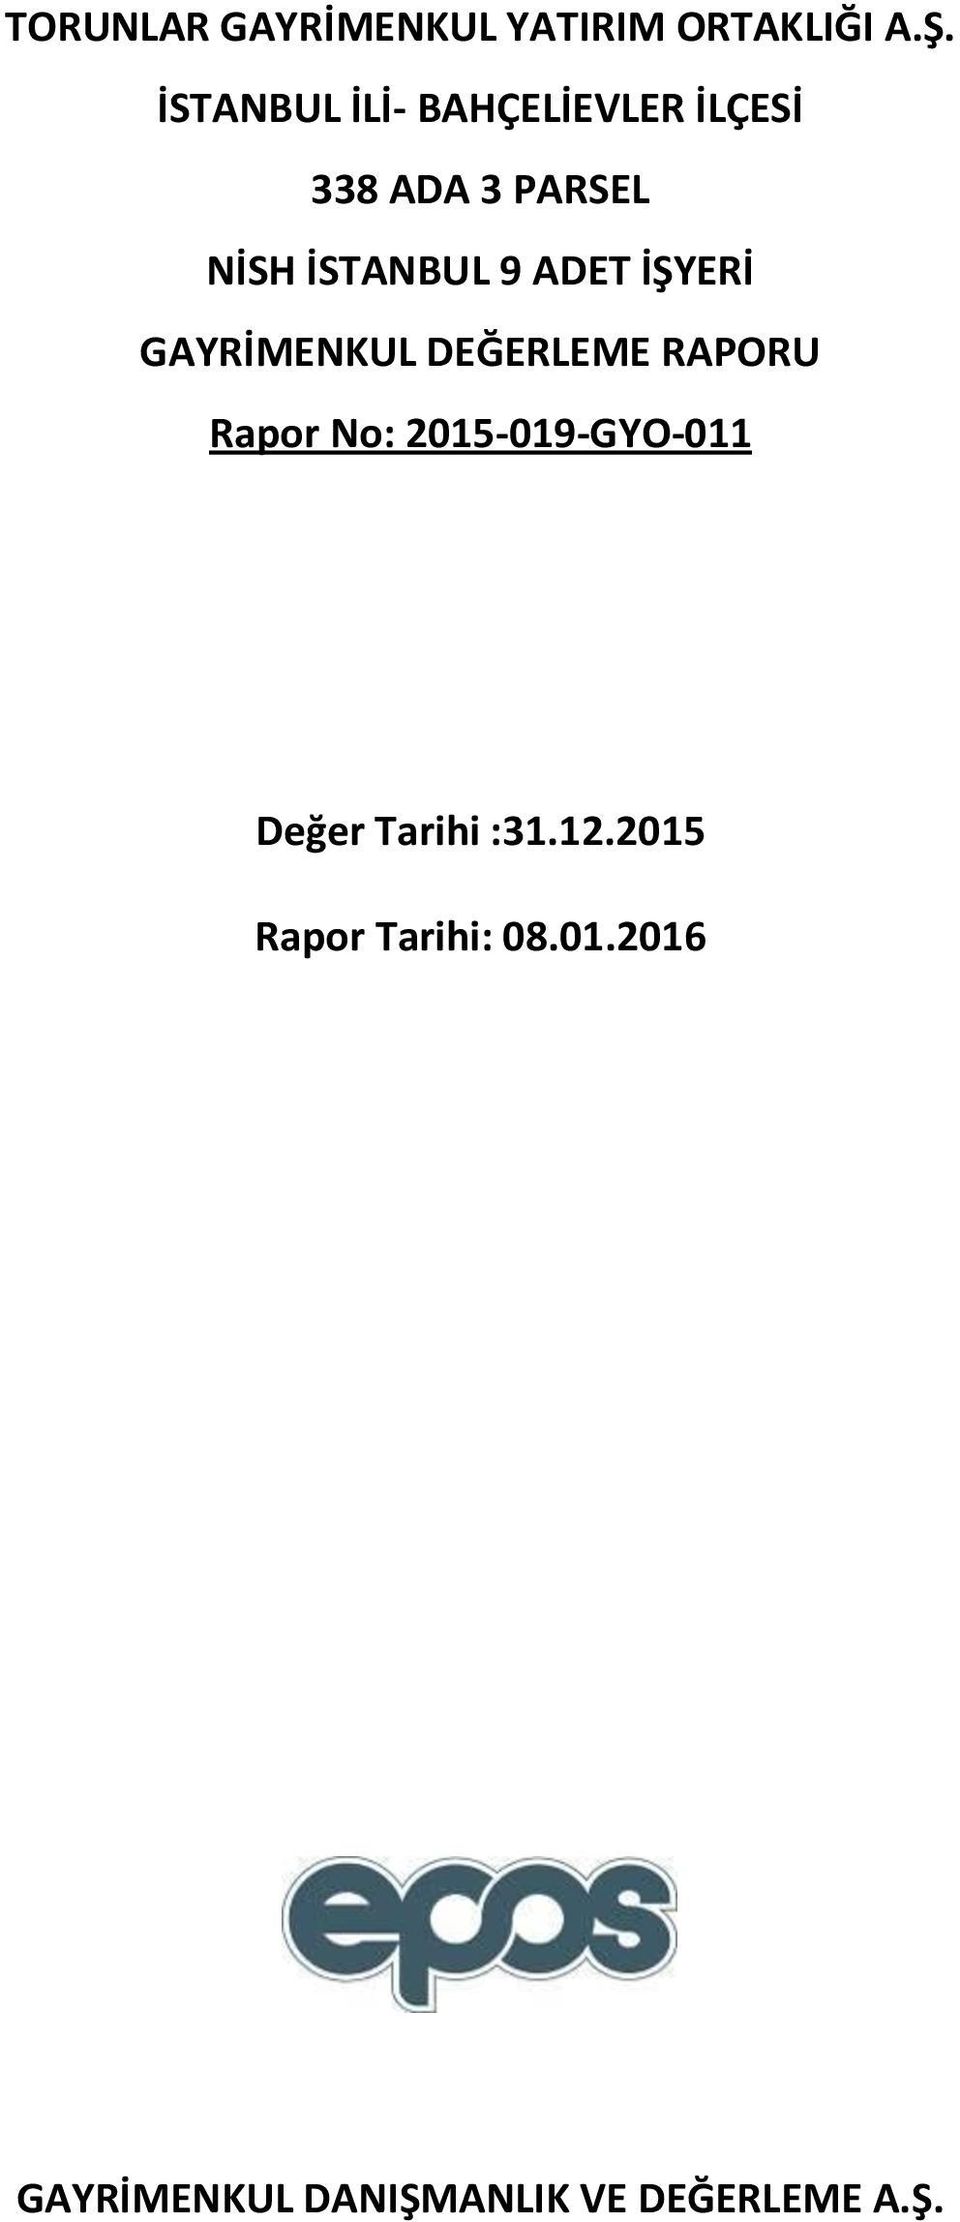 ADET İŞYERİ GAYRİMENKUL DEĞERLEME RAPORU Rapor No: 2015-019-GYO-011